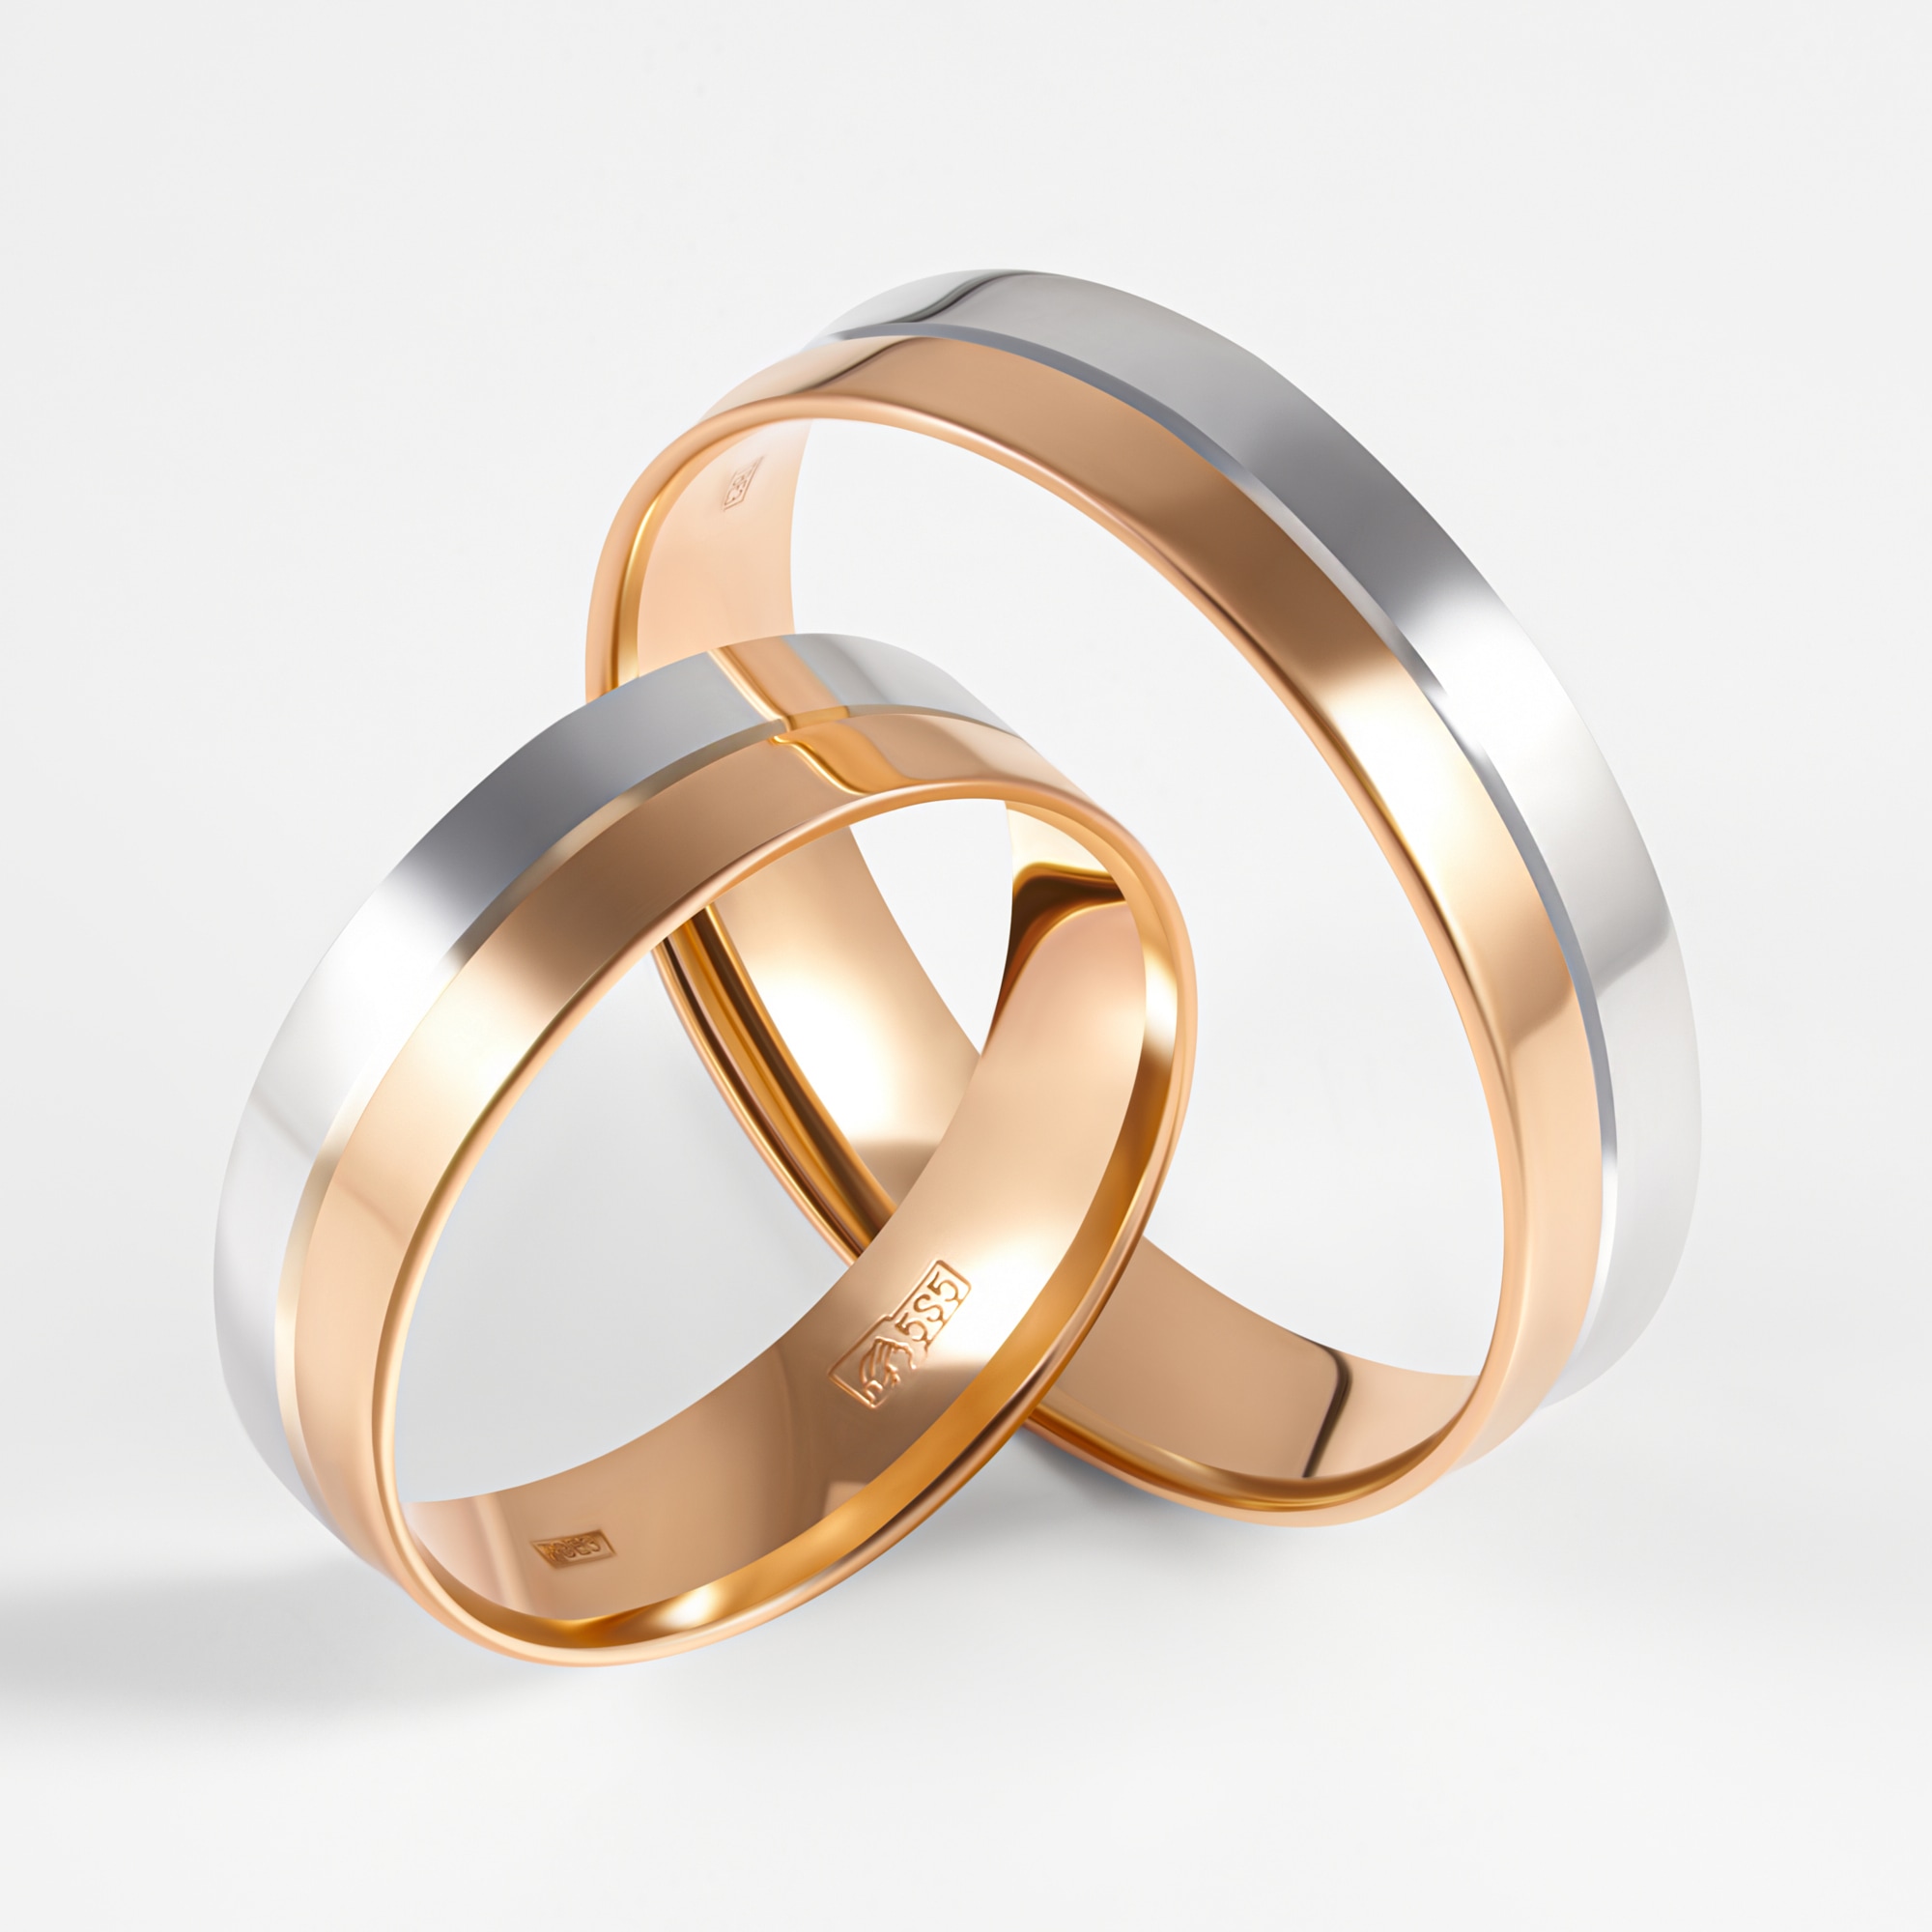 Сонник — к чему снится обручальное кольцо